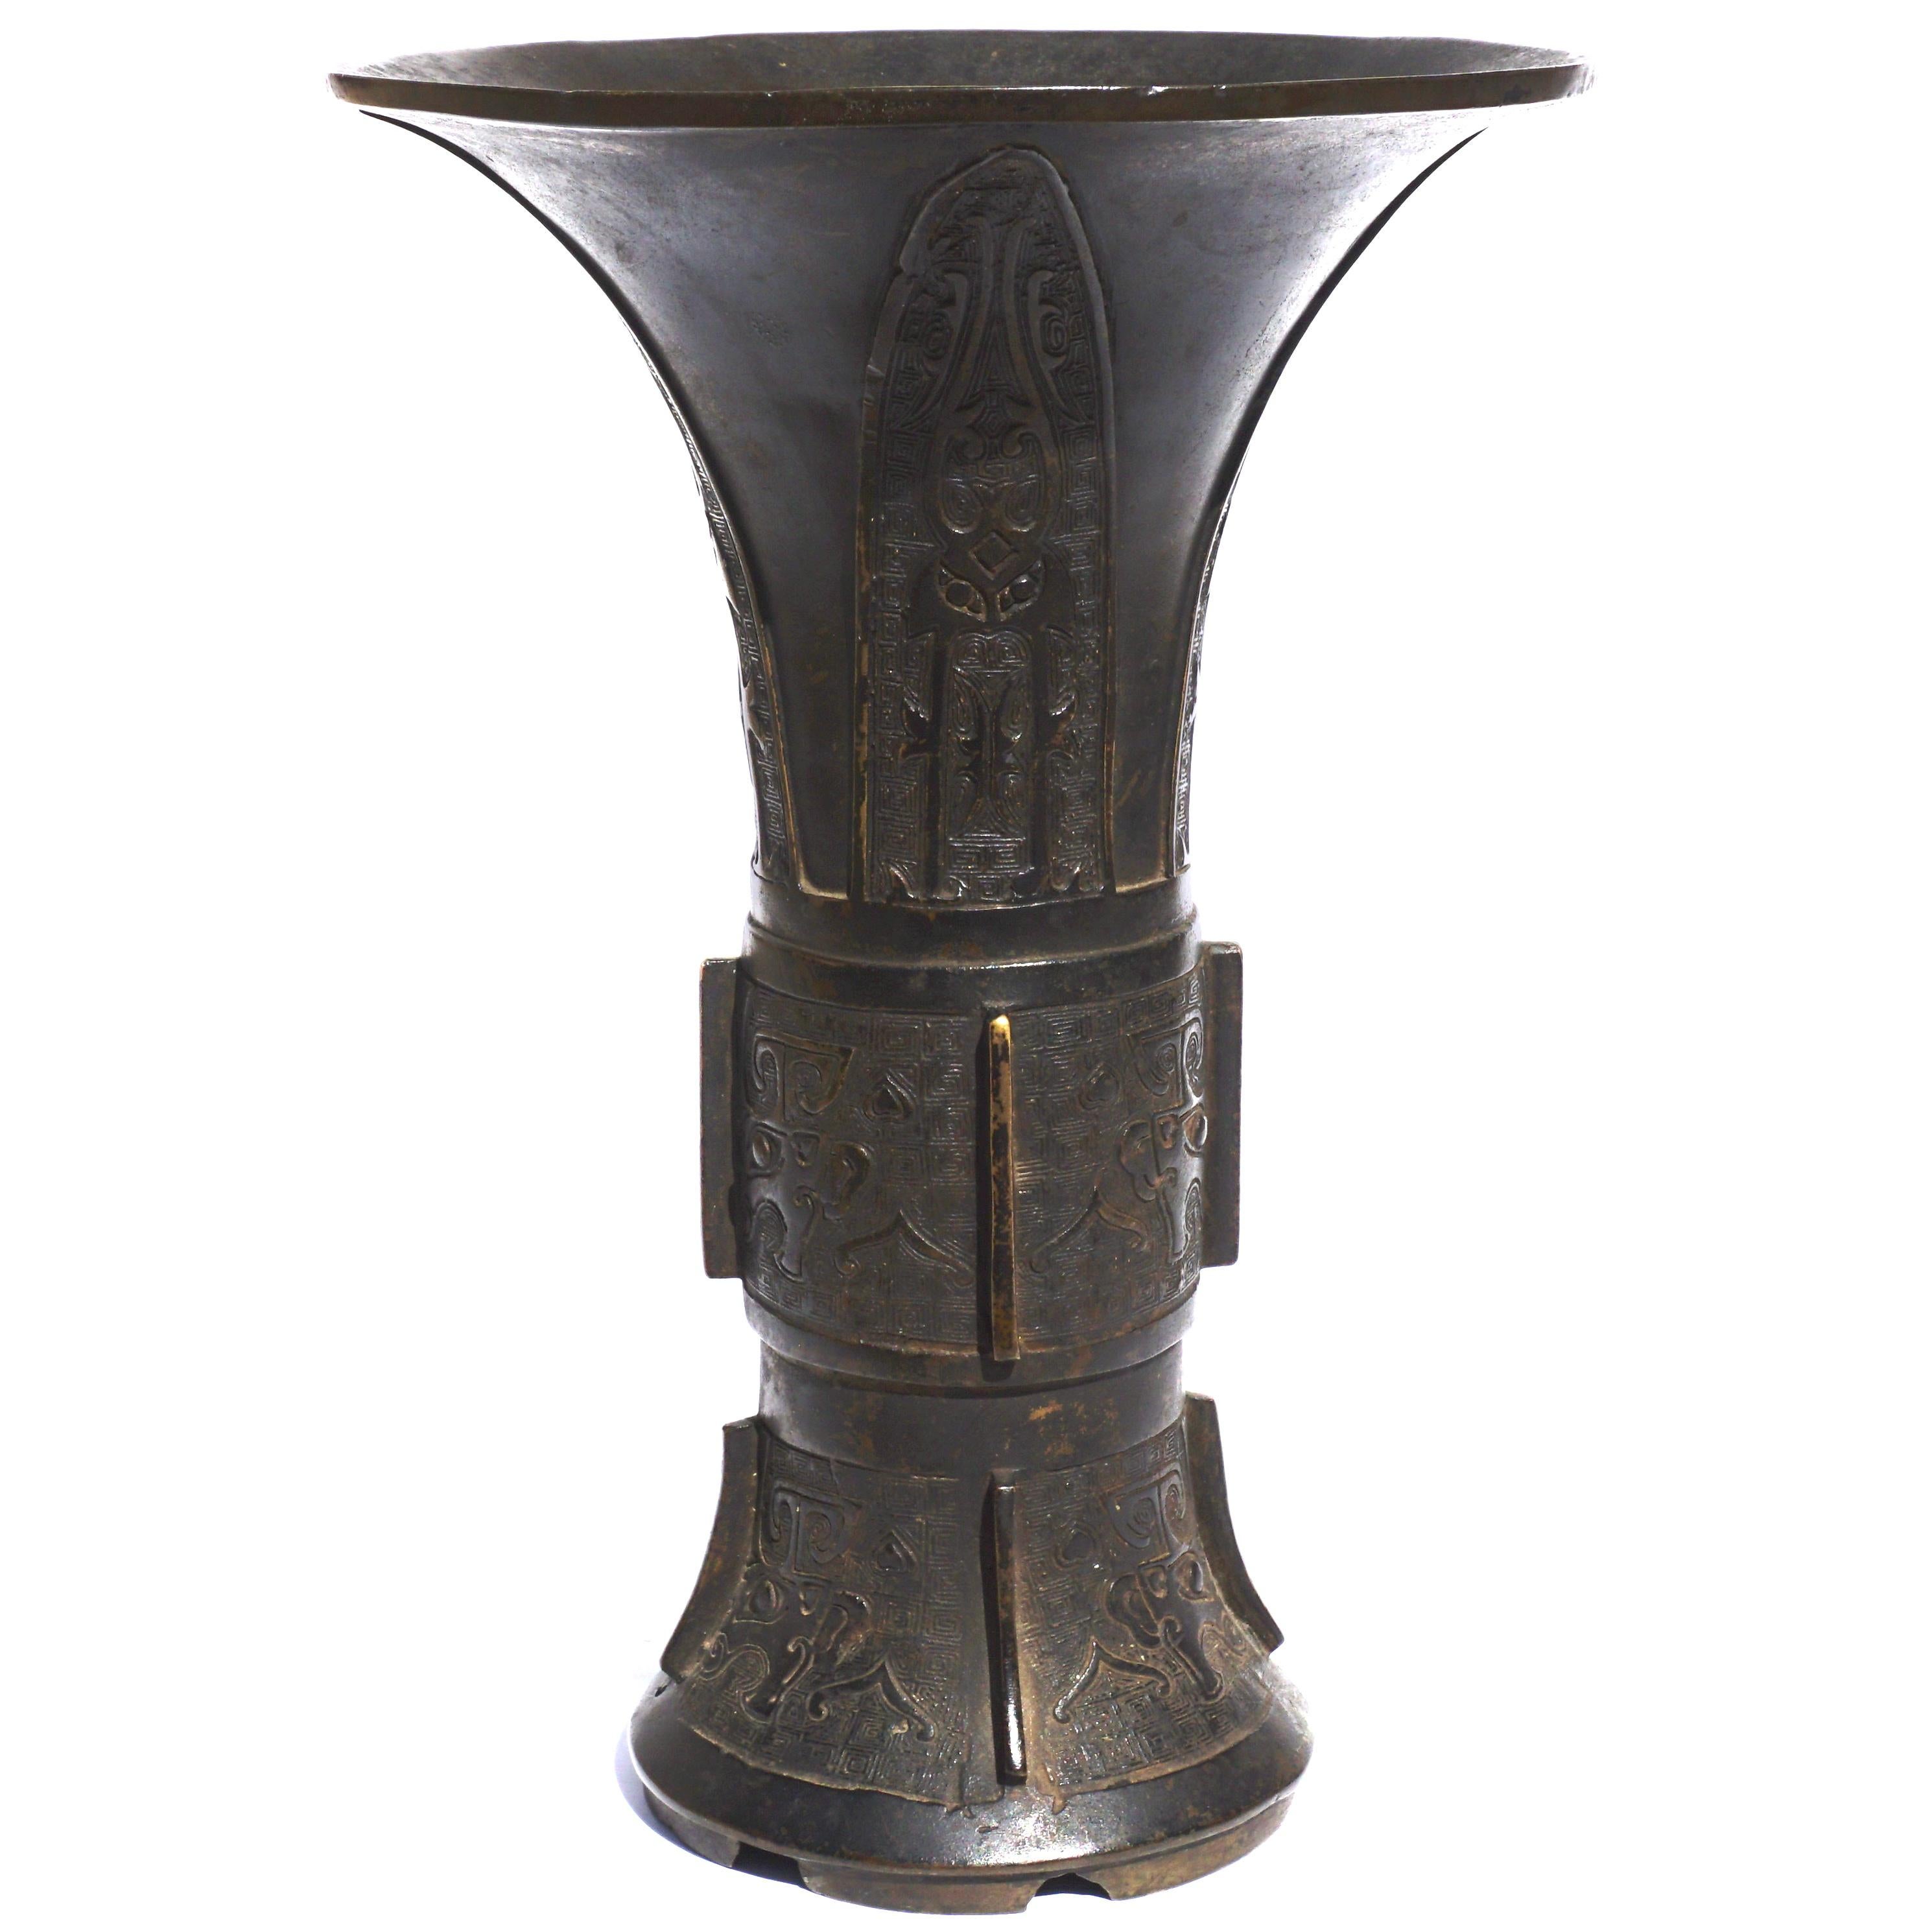 Vaso cinese in bronzo, Gu, la sezione superiore a forma di tromba è fusa con quattro lame riempite con disegni arcaici. Le sezioni centrale e inferiore raffigurano i Toadies con sfondi molto intricati. Con una bella patina scura e ricca. Circa 17°